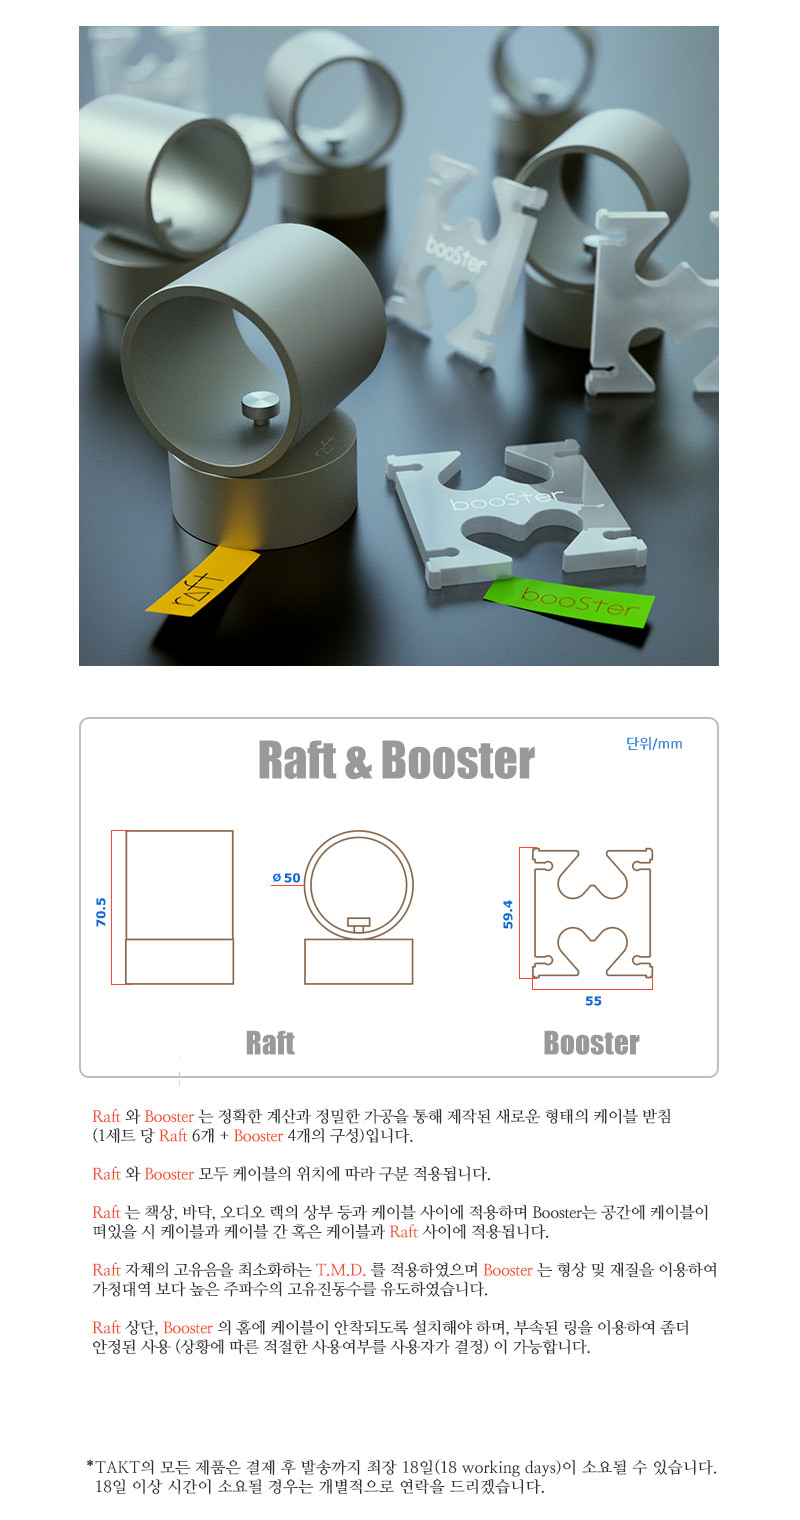 Raft와 Booster는 정확한 계산과 정밀한 가공을 통해 제작된 새로운 형태의 케이블 받침입니다. 1세트당 Raft 6개 + Booster 4개의 구성입니다. Raft는 책상, 시청실바닥, 오디오 랙의 상부등과 케이블 사이에 적용하며 Booster는 공간에 케이블이 떠 있는 경우 케이블과 케이블 사이 혹은 케이블과 Raft 사이에 적용됩니다. Raft자체의 고유음을 최소화하는 T.M.D.를 적용하였으며 Booster는 형상 및 재질을 이용하여 가청대역보다 높은 주파수의 고유진동수를 유도하였습니다. Raft 상단, Booster의 홈에 케이블이 안착되도록 설치해야 하며, 부속된 링을 이용하여 좀 더 안정된 사용이 가능합니다. Raft는 원통 2개가 붙은 형태의 은색 금속제로 높이 70.5밀리미터, 지름 50밀리미터이고 Booster는 반투명 흰색 아크릴제로 가로 55밀리미터, 높이 59.4밀리미터입니다. TAKT의 모든 제품은 결제 후 배송까지 최장 18영업일(18 working days)이 소요될 수 있습니다. 18영업일 이상의 시간이 소요되는 경우 연락을 드리겠습니다.